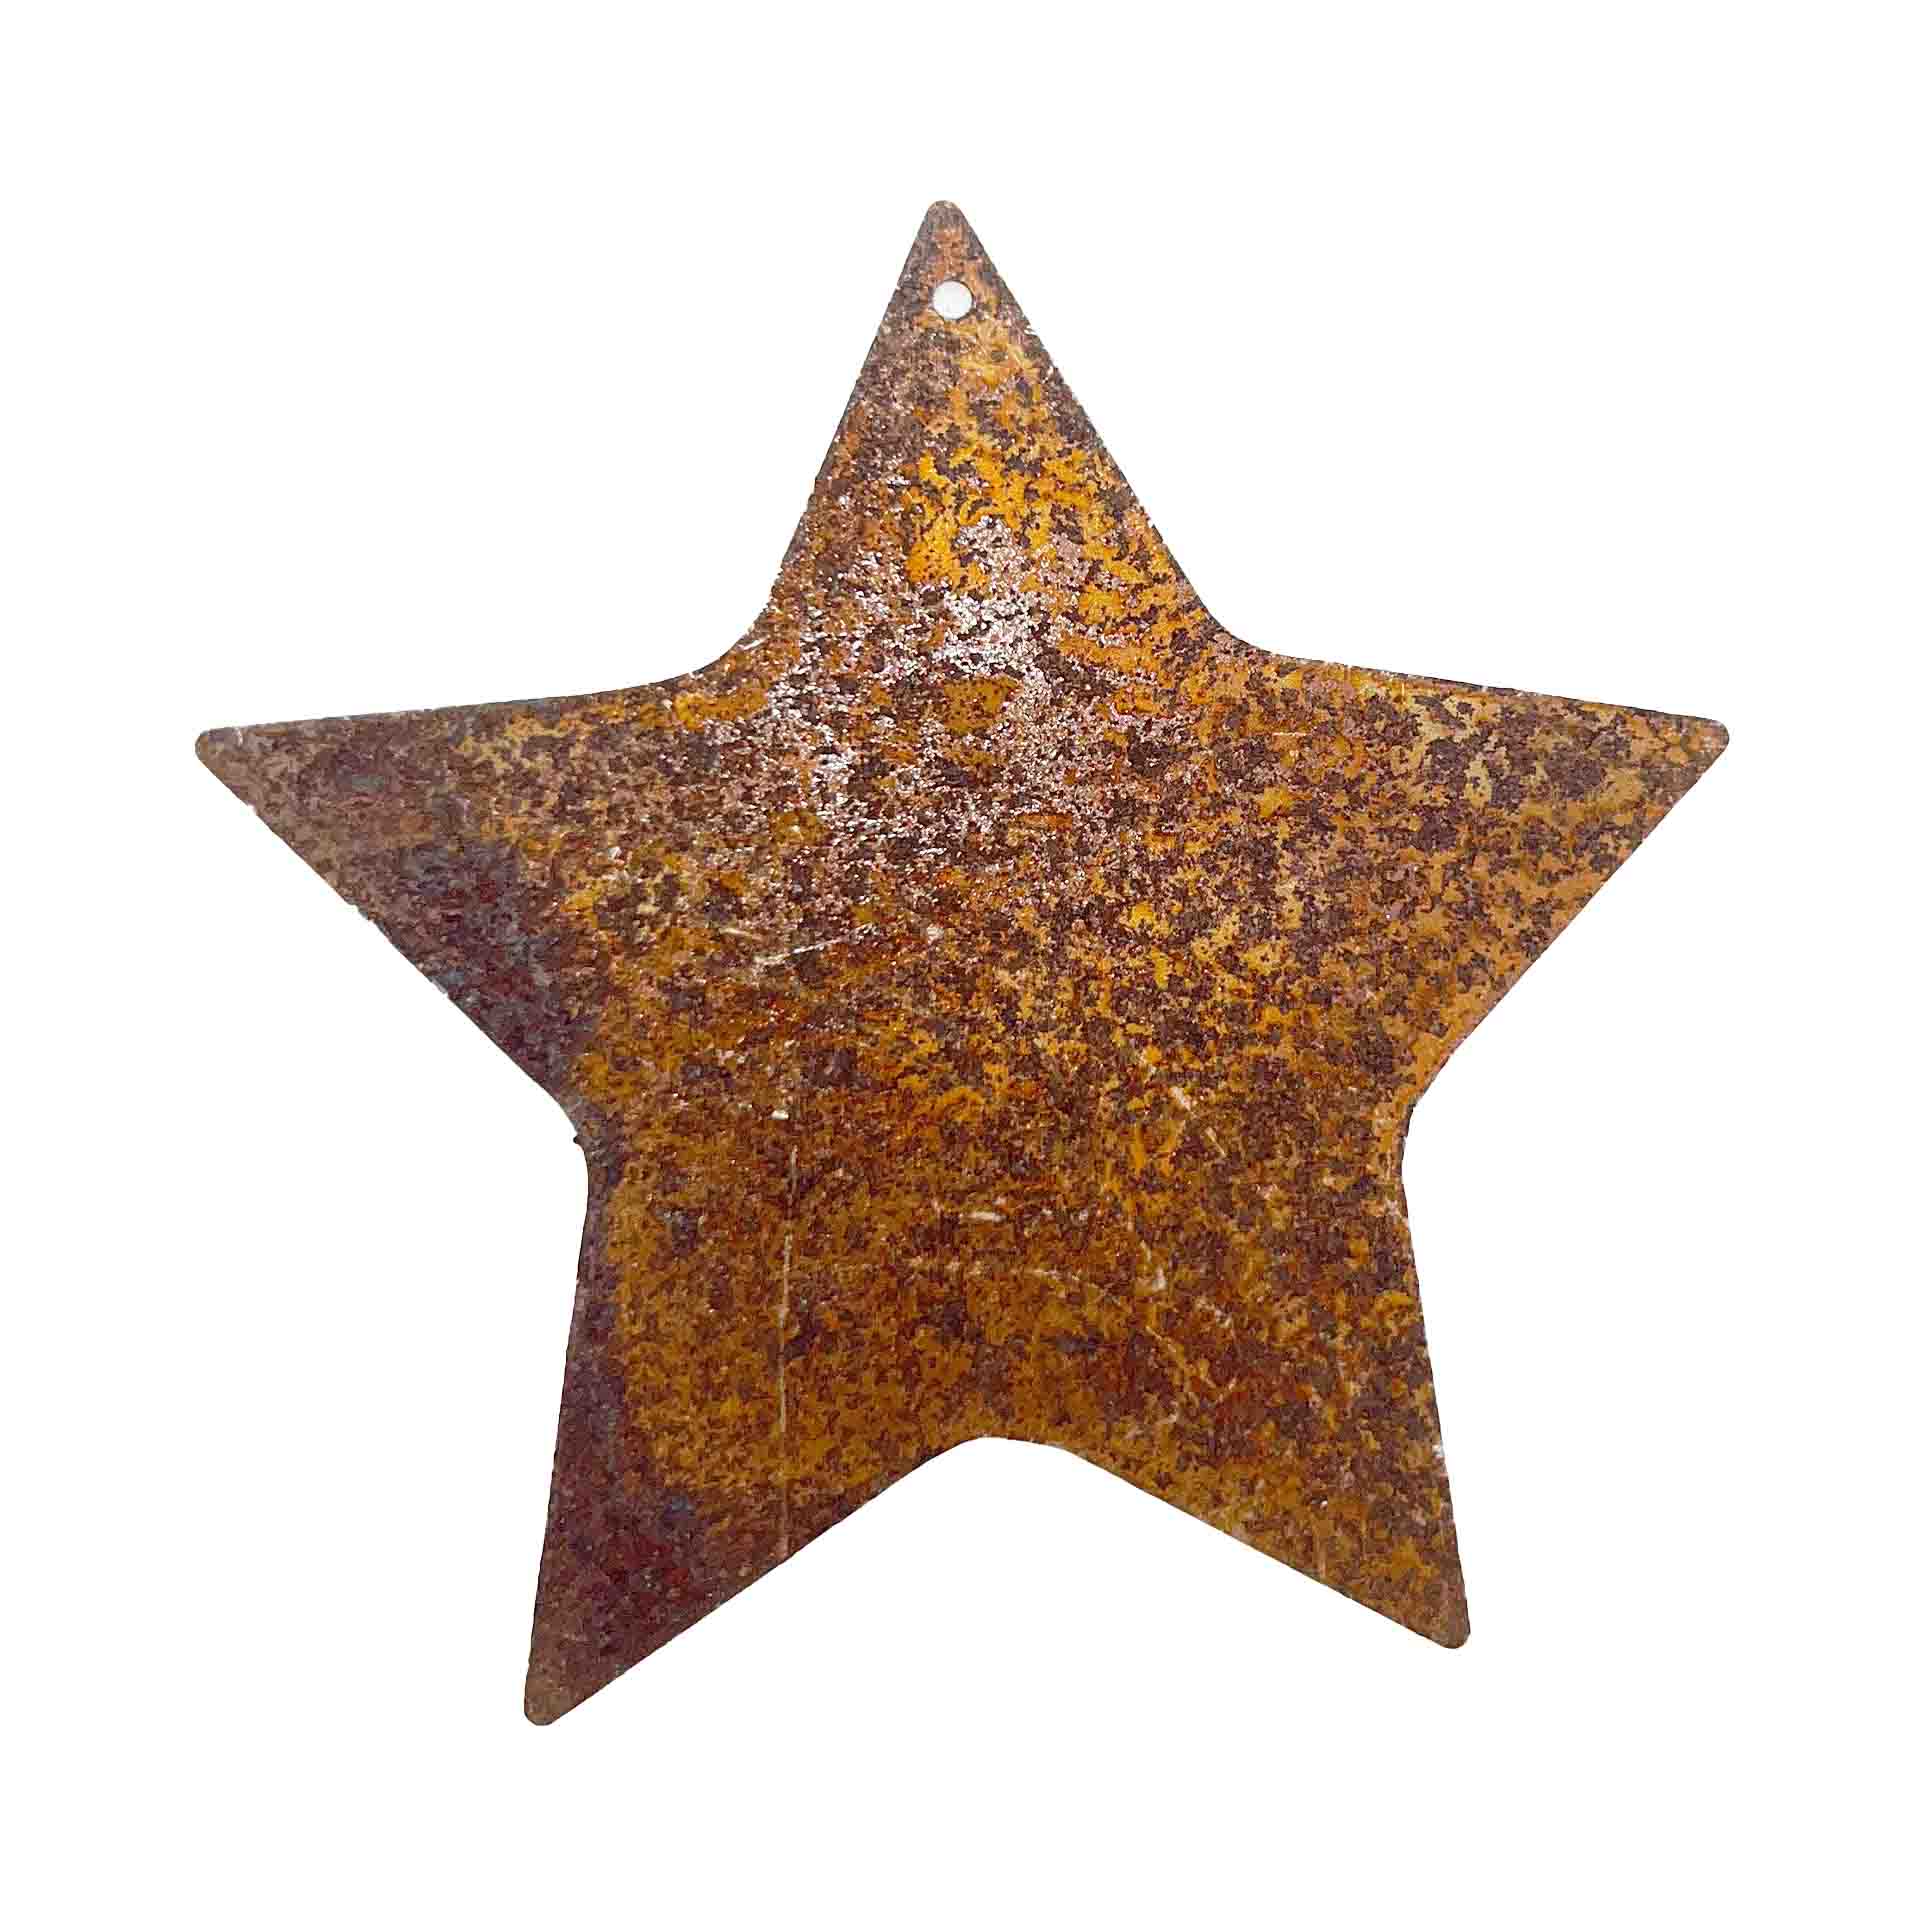 Stern zum Hängen, Edelrost, Rost, ca. Ø 8 - 8,5 cm